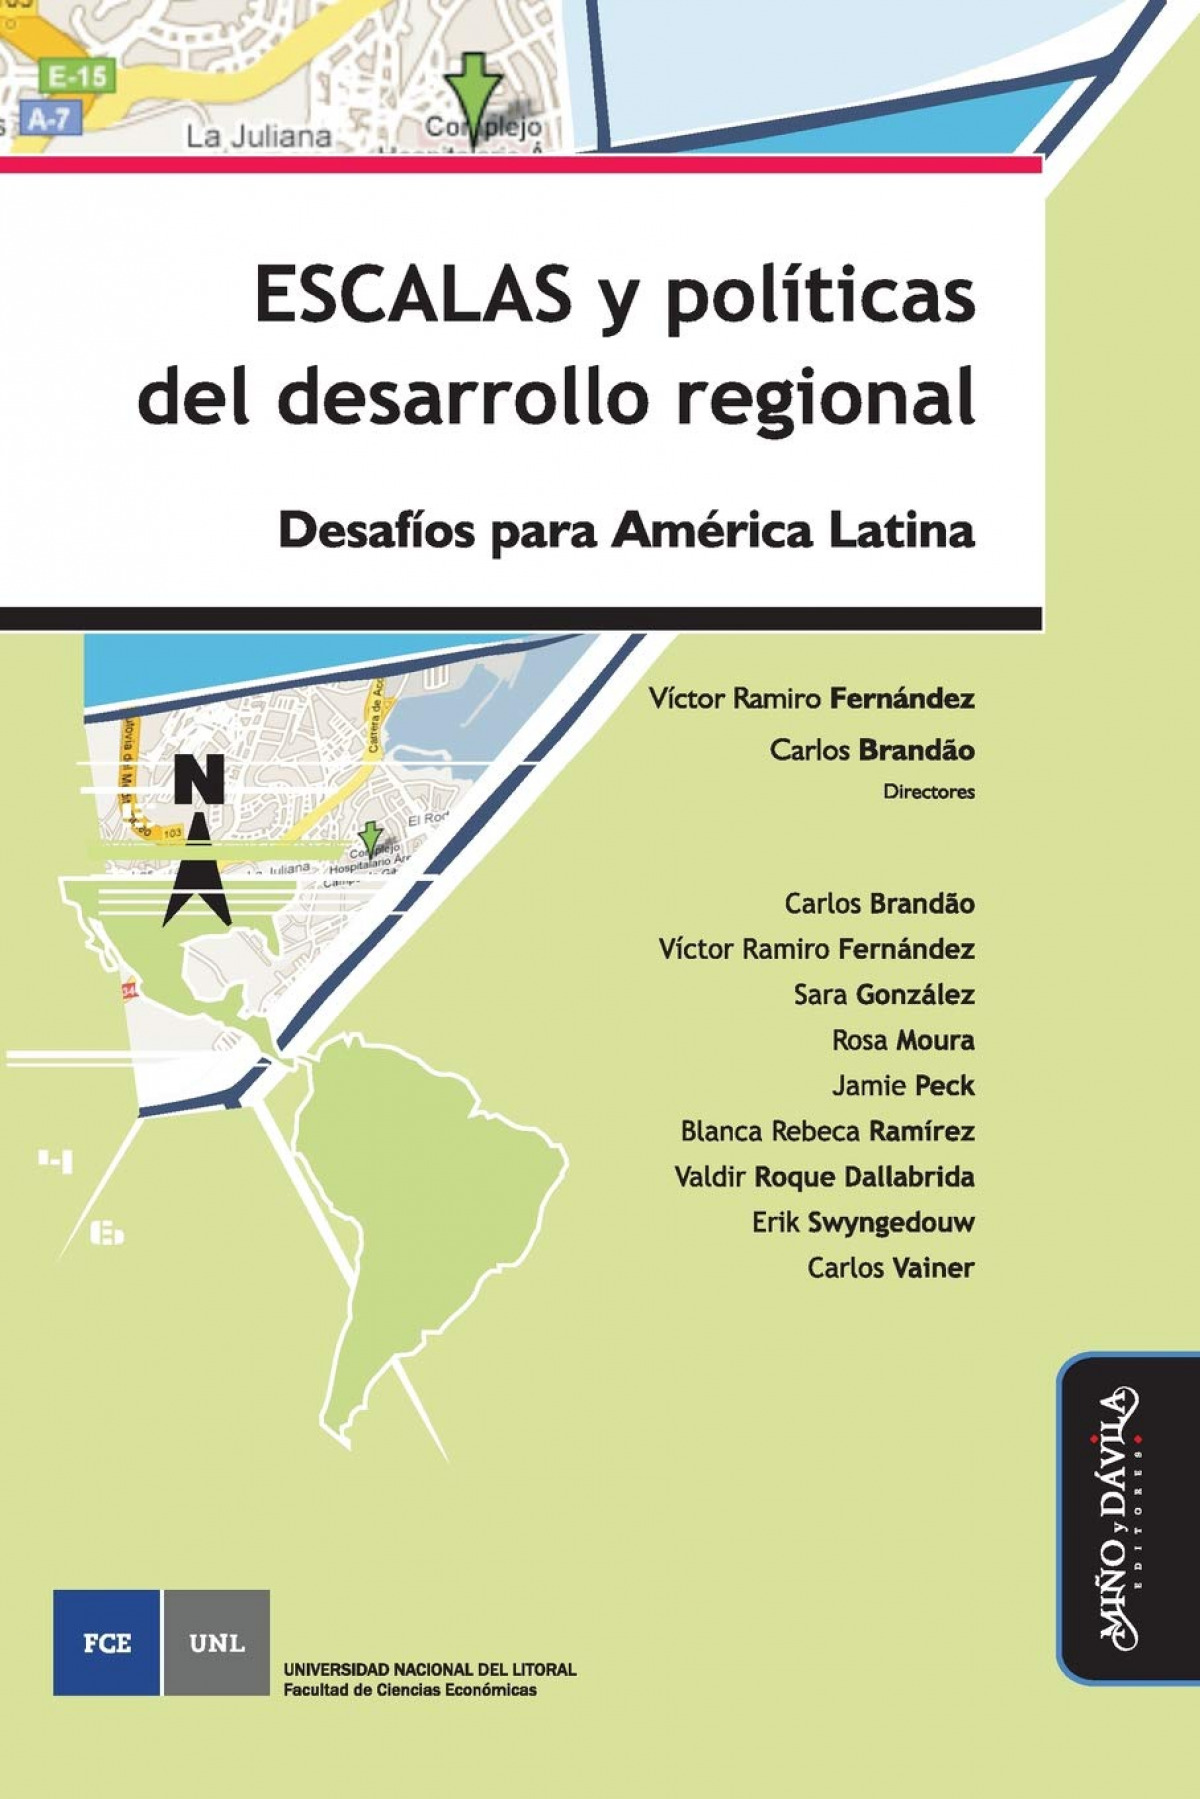 Escalas y políticas del desarrollo regional Desafíos para América Lati - Brandao, Carlos / Fernández, Víctor Ramiro / González, Sara / Moura, Rosa / Peck, Jamie / Ramírez, B